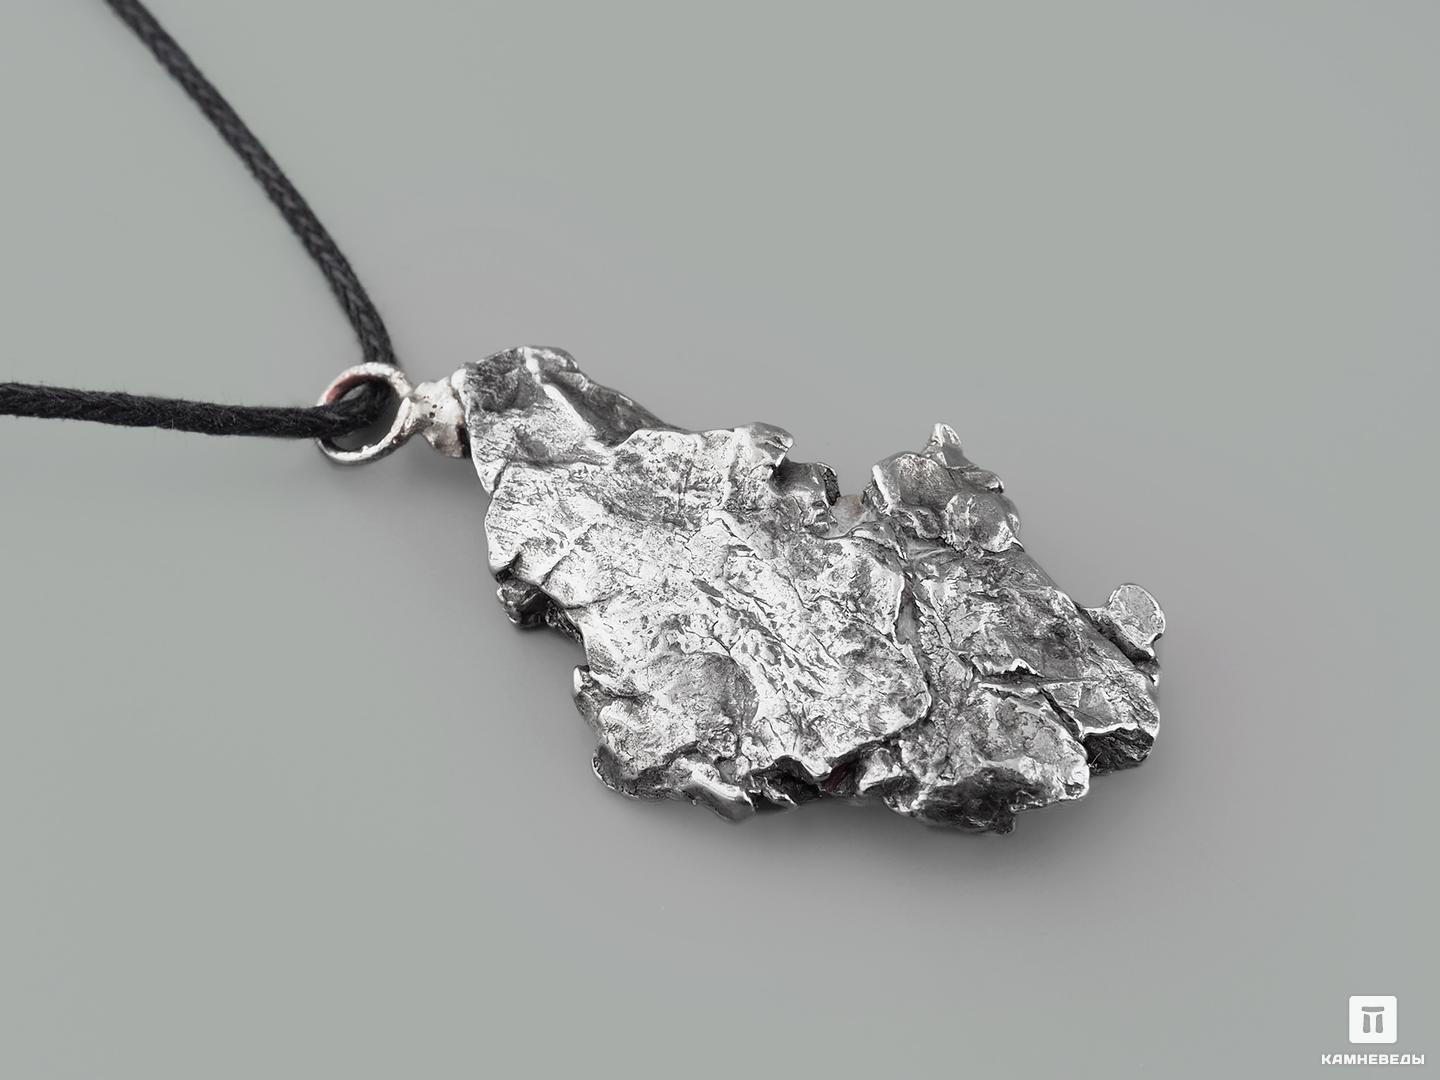 Кулон метеорит Кампо-дель-Сьело, 2-3 см (6-9 г)